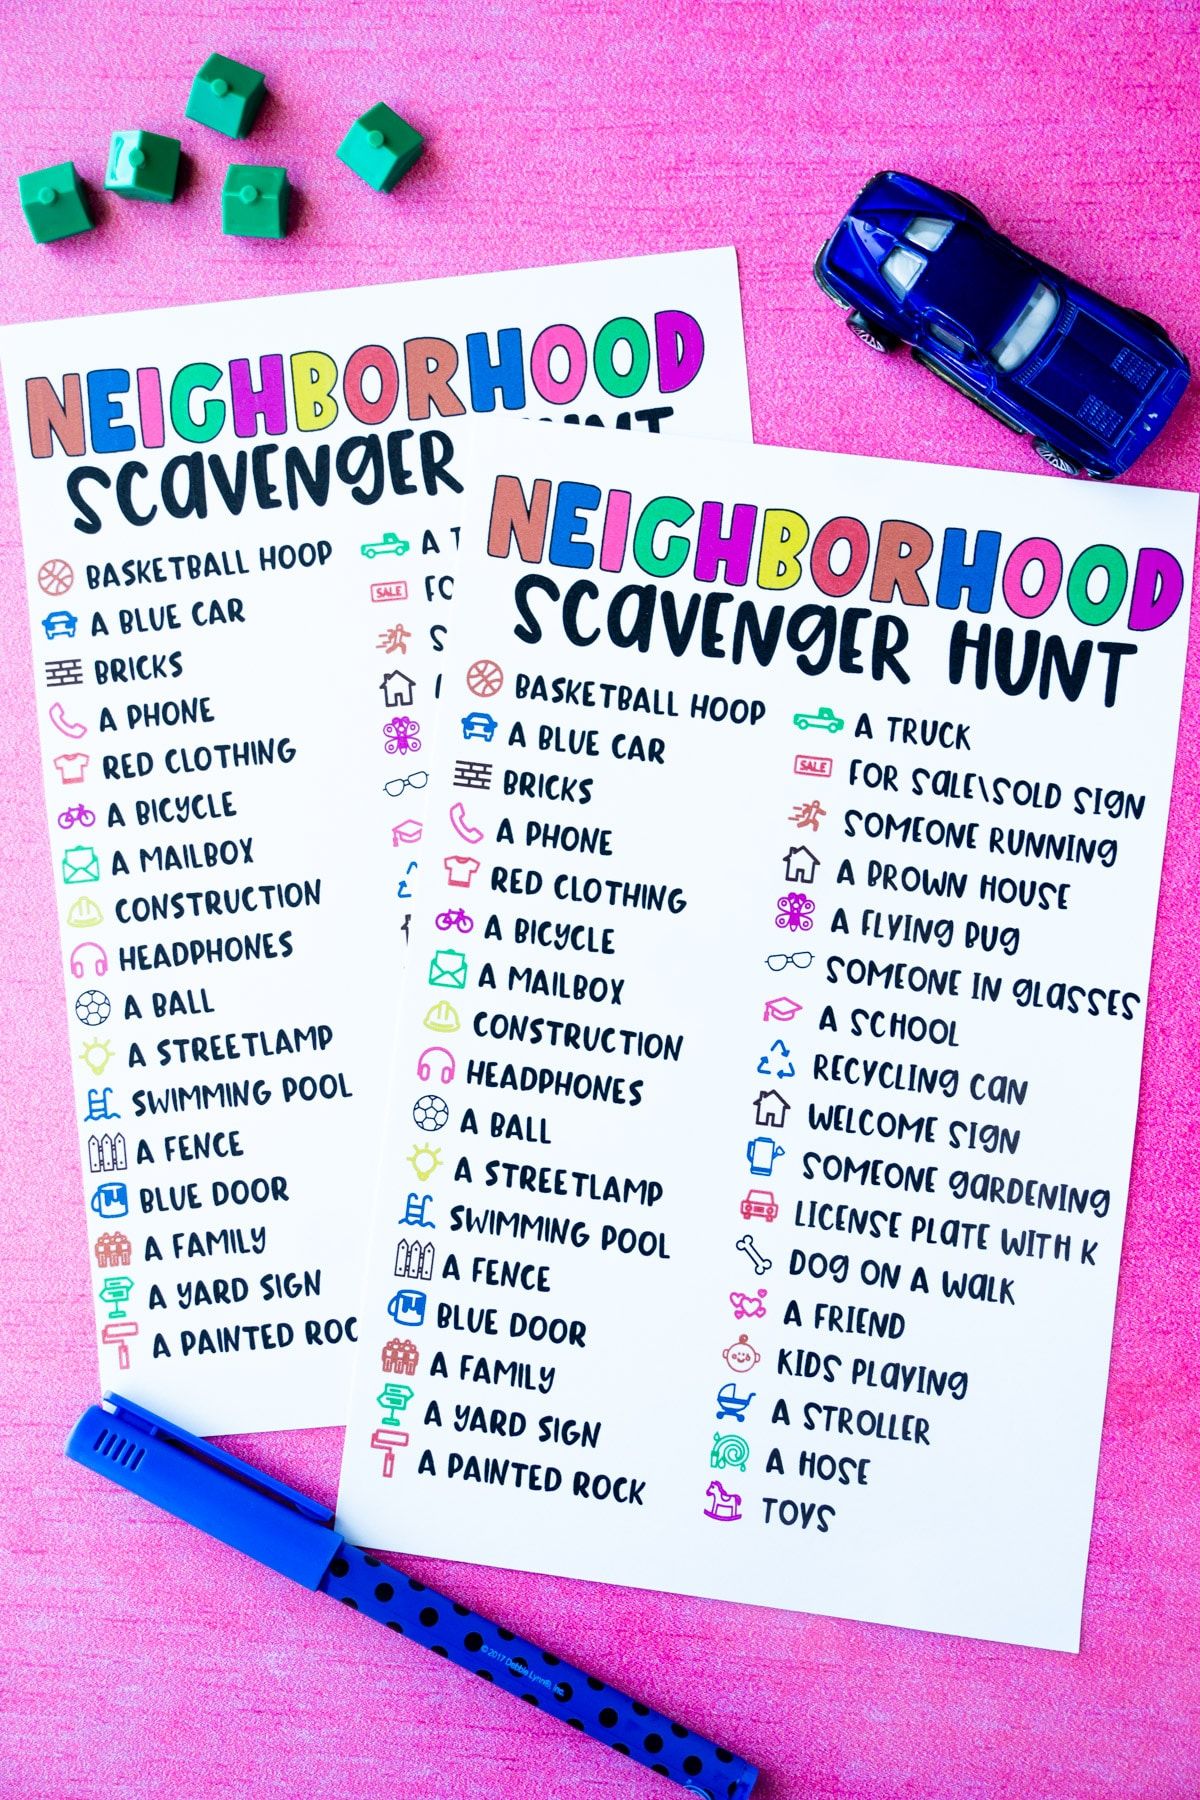 کھلونے والے مکانات کے ساتھ دو پڑوسی اسکینجر شکار کی فہرستیں